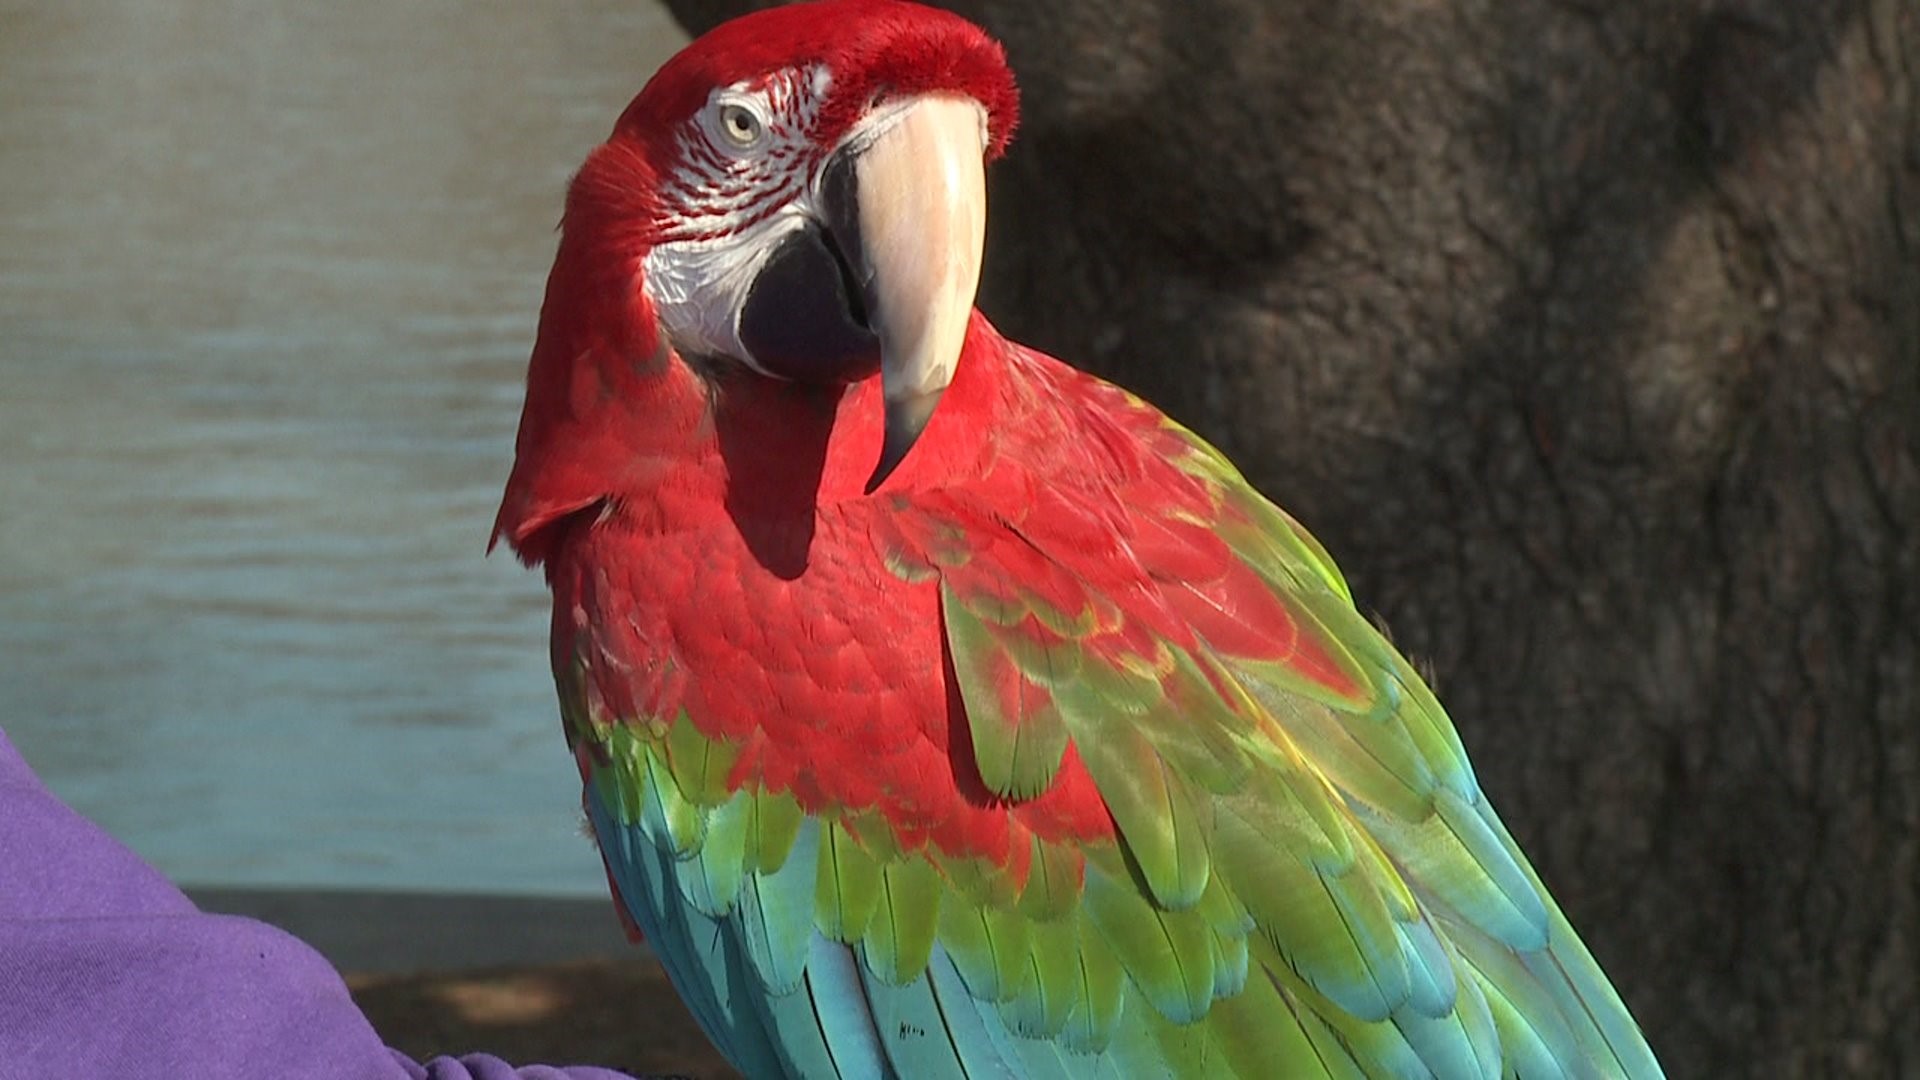 Deuce the Parrot visits Vander Veer Park